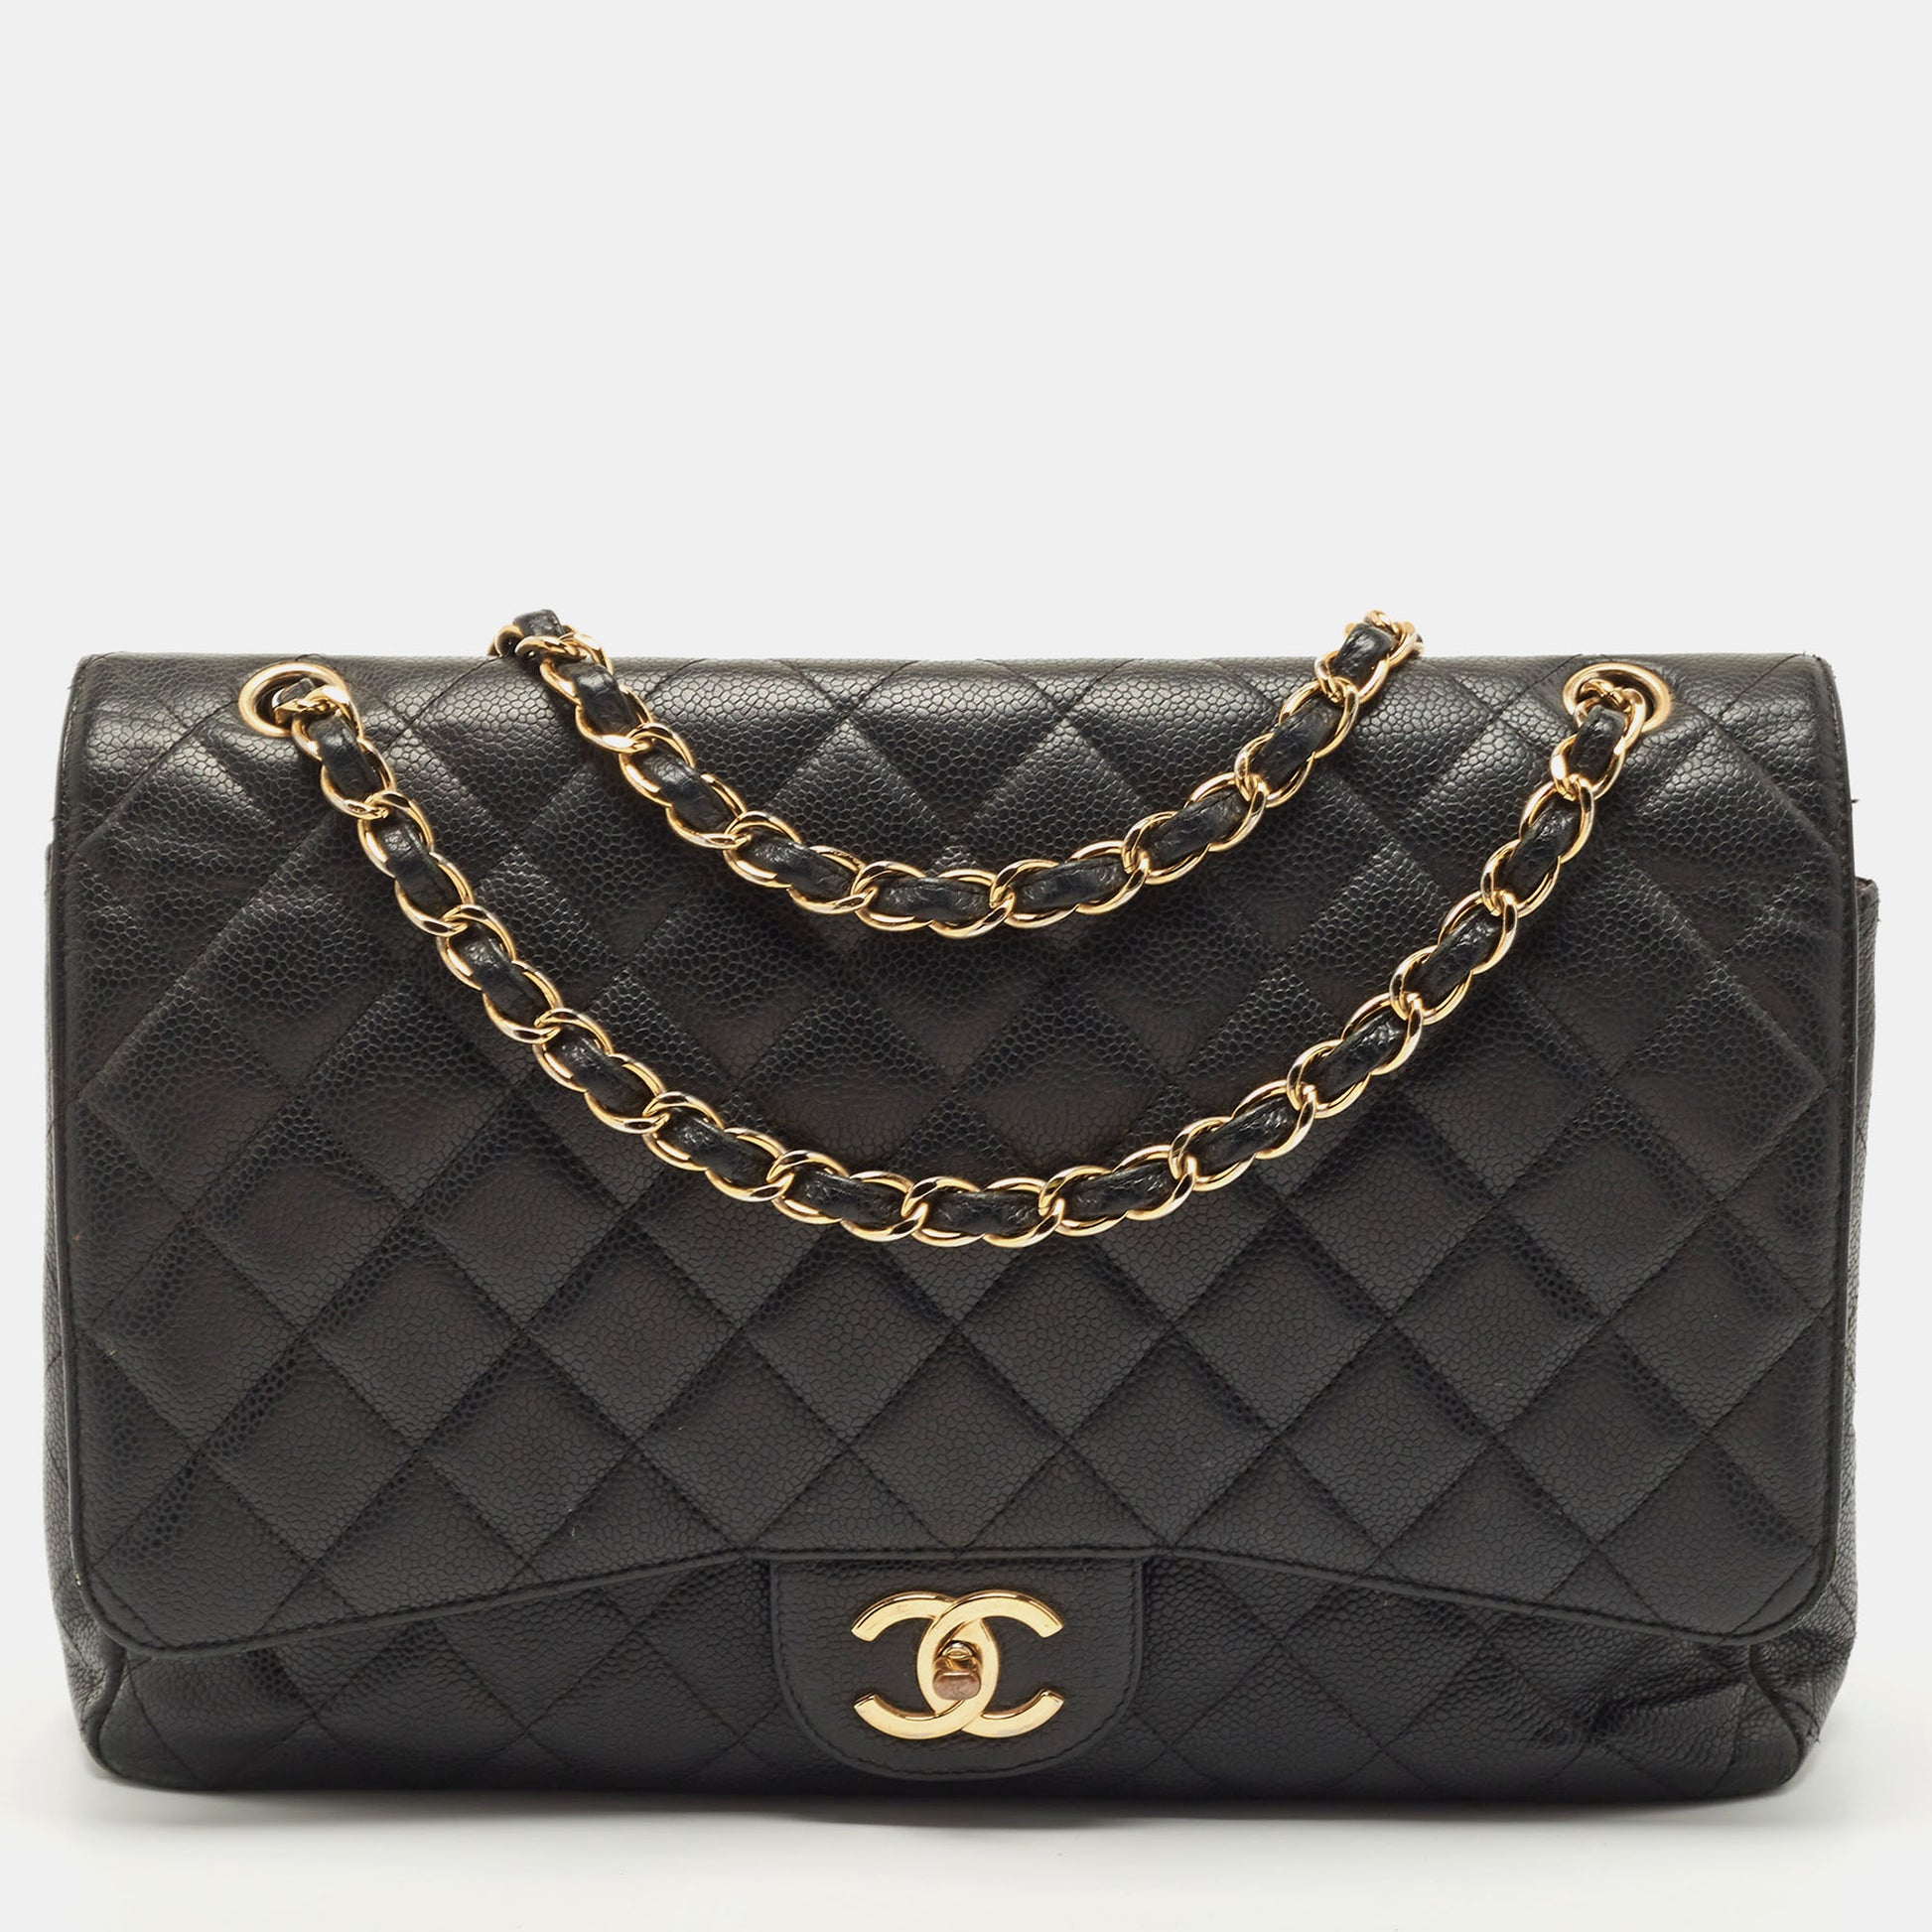 Chanel Handbag Lady Handbags Pochette Bag Chain Crossbody Bags